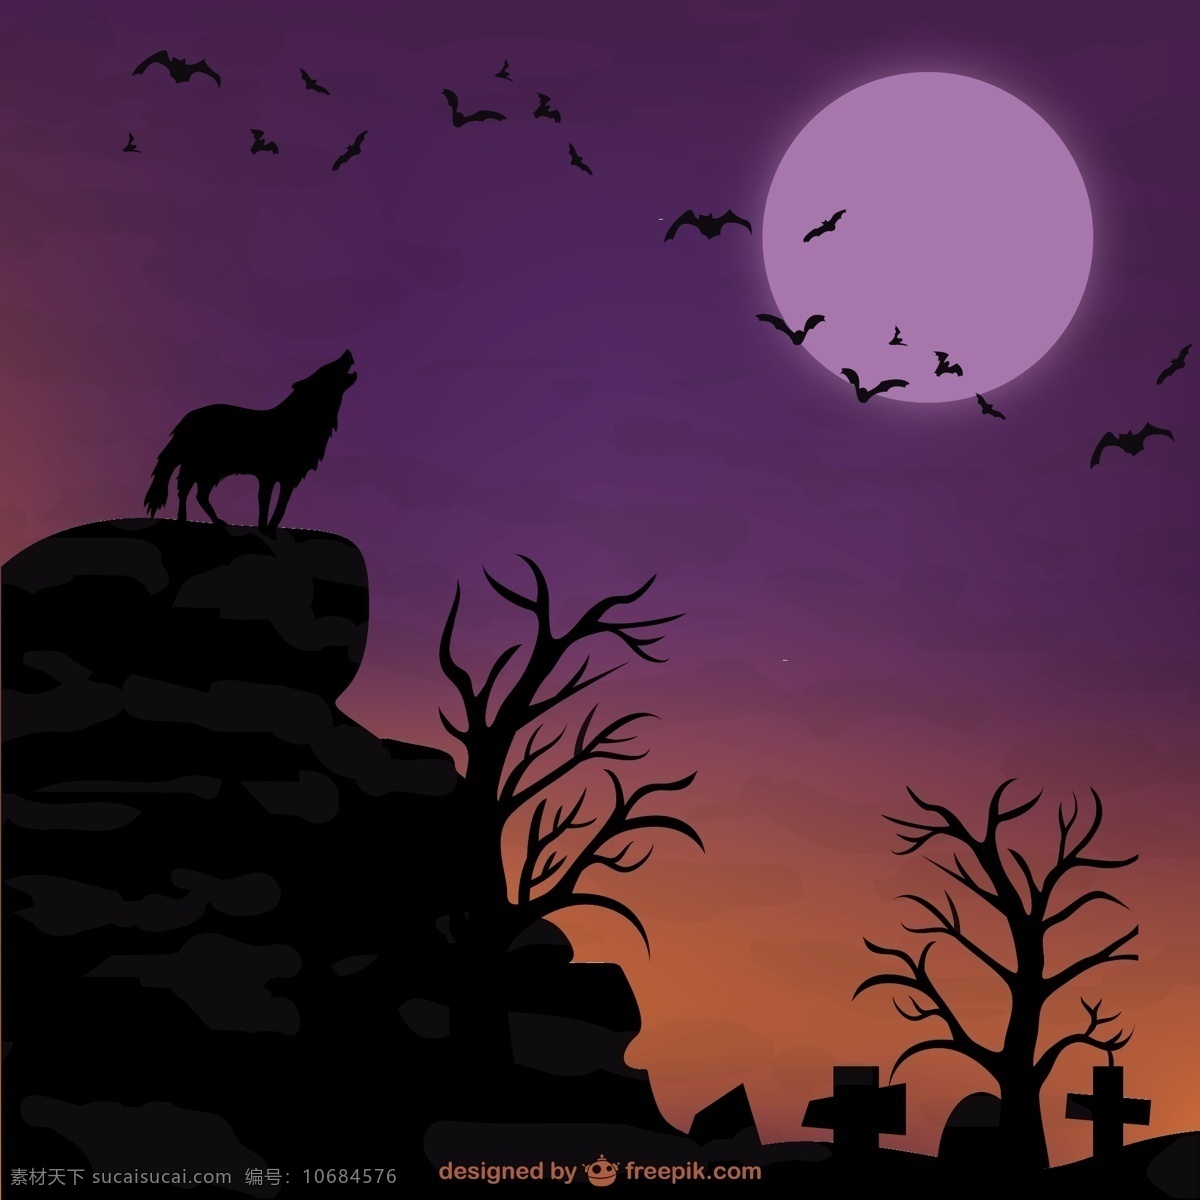 万圣节 狼 月亮 背景 晚上 万圣节的背景 主题 万圣节蝙蝠 矢量 可怕 墓地 蝙蝠 幽灵 万圣节的载体 万圣节之夜 万圣节主题 黑色